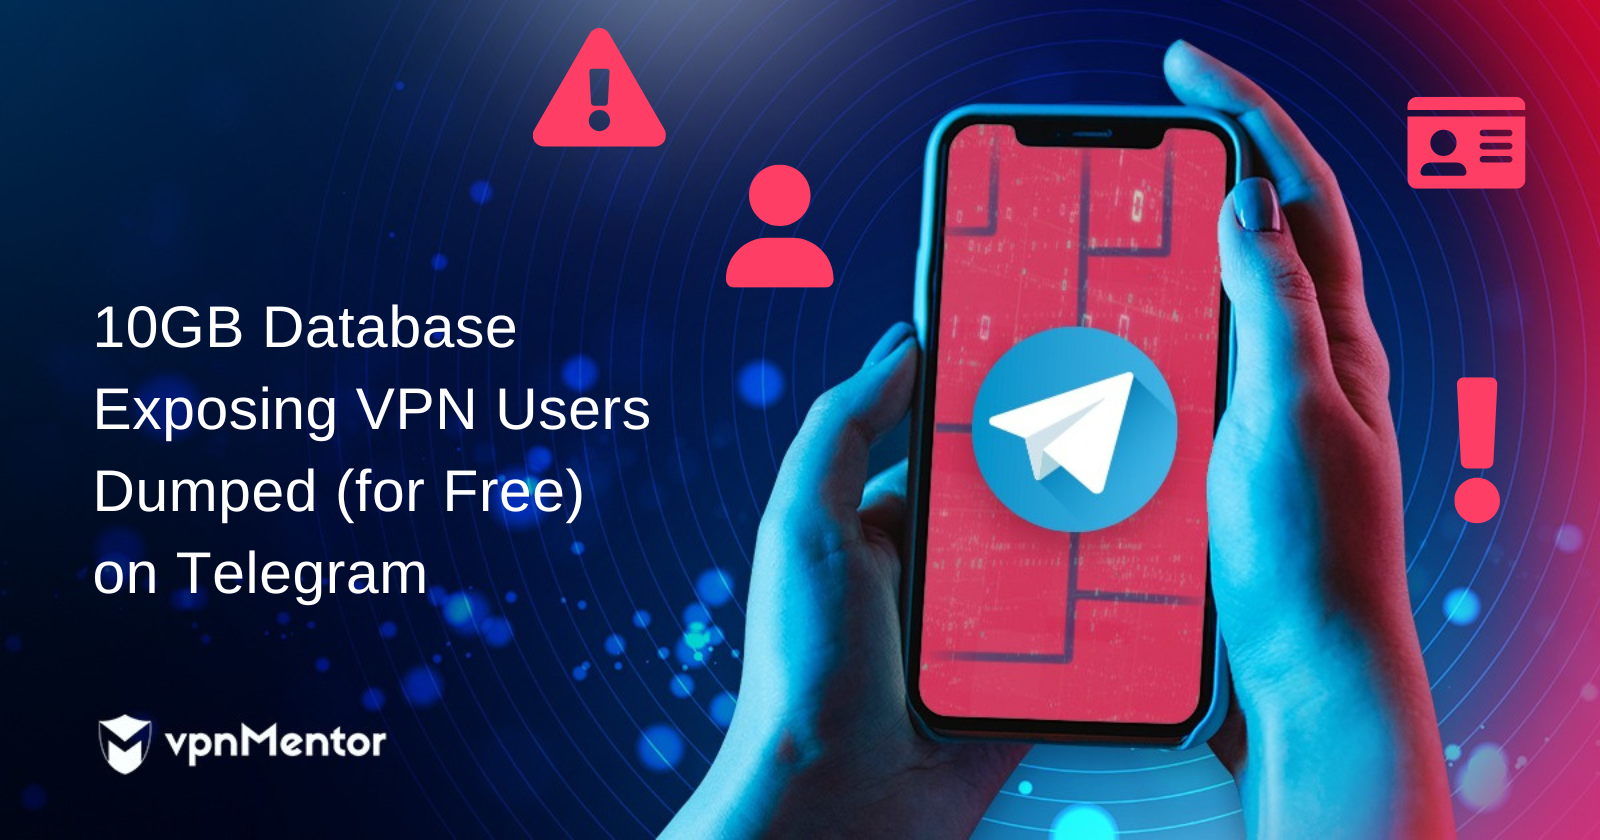 10GB Database Exposing VPN Users Dumped (for Free) on Telegram